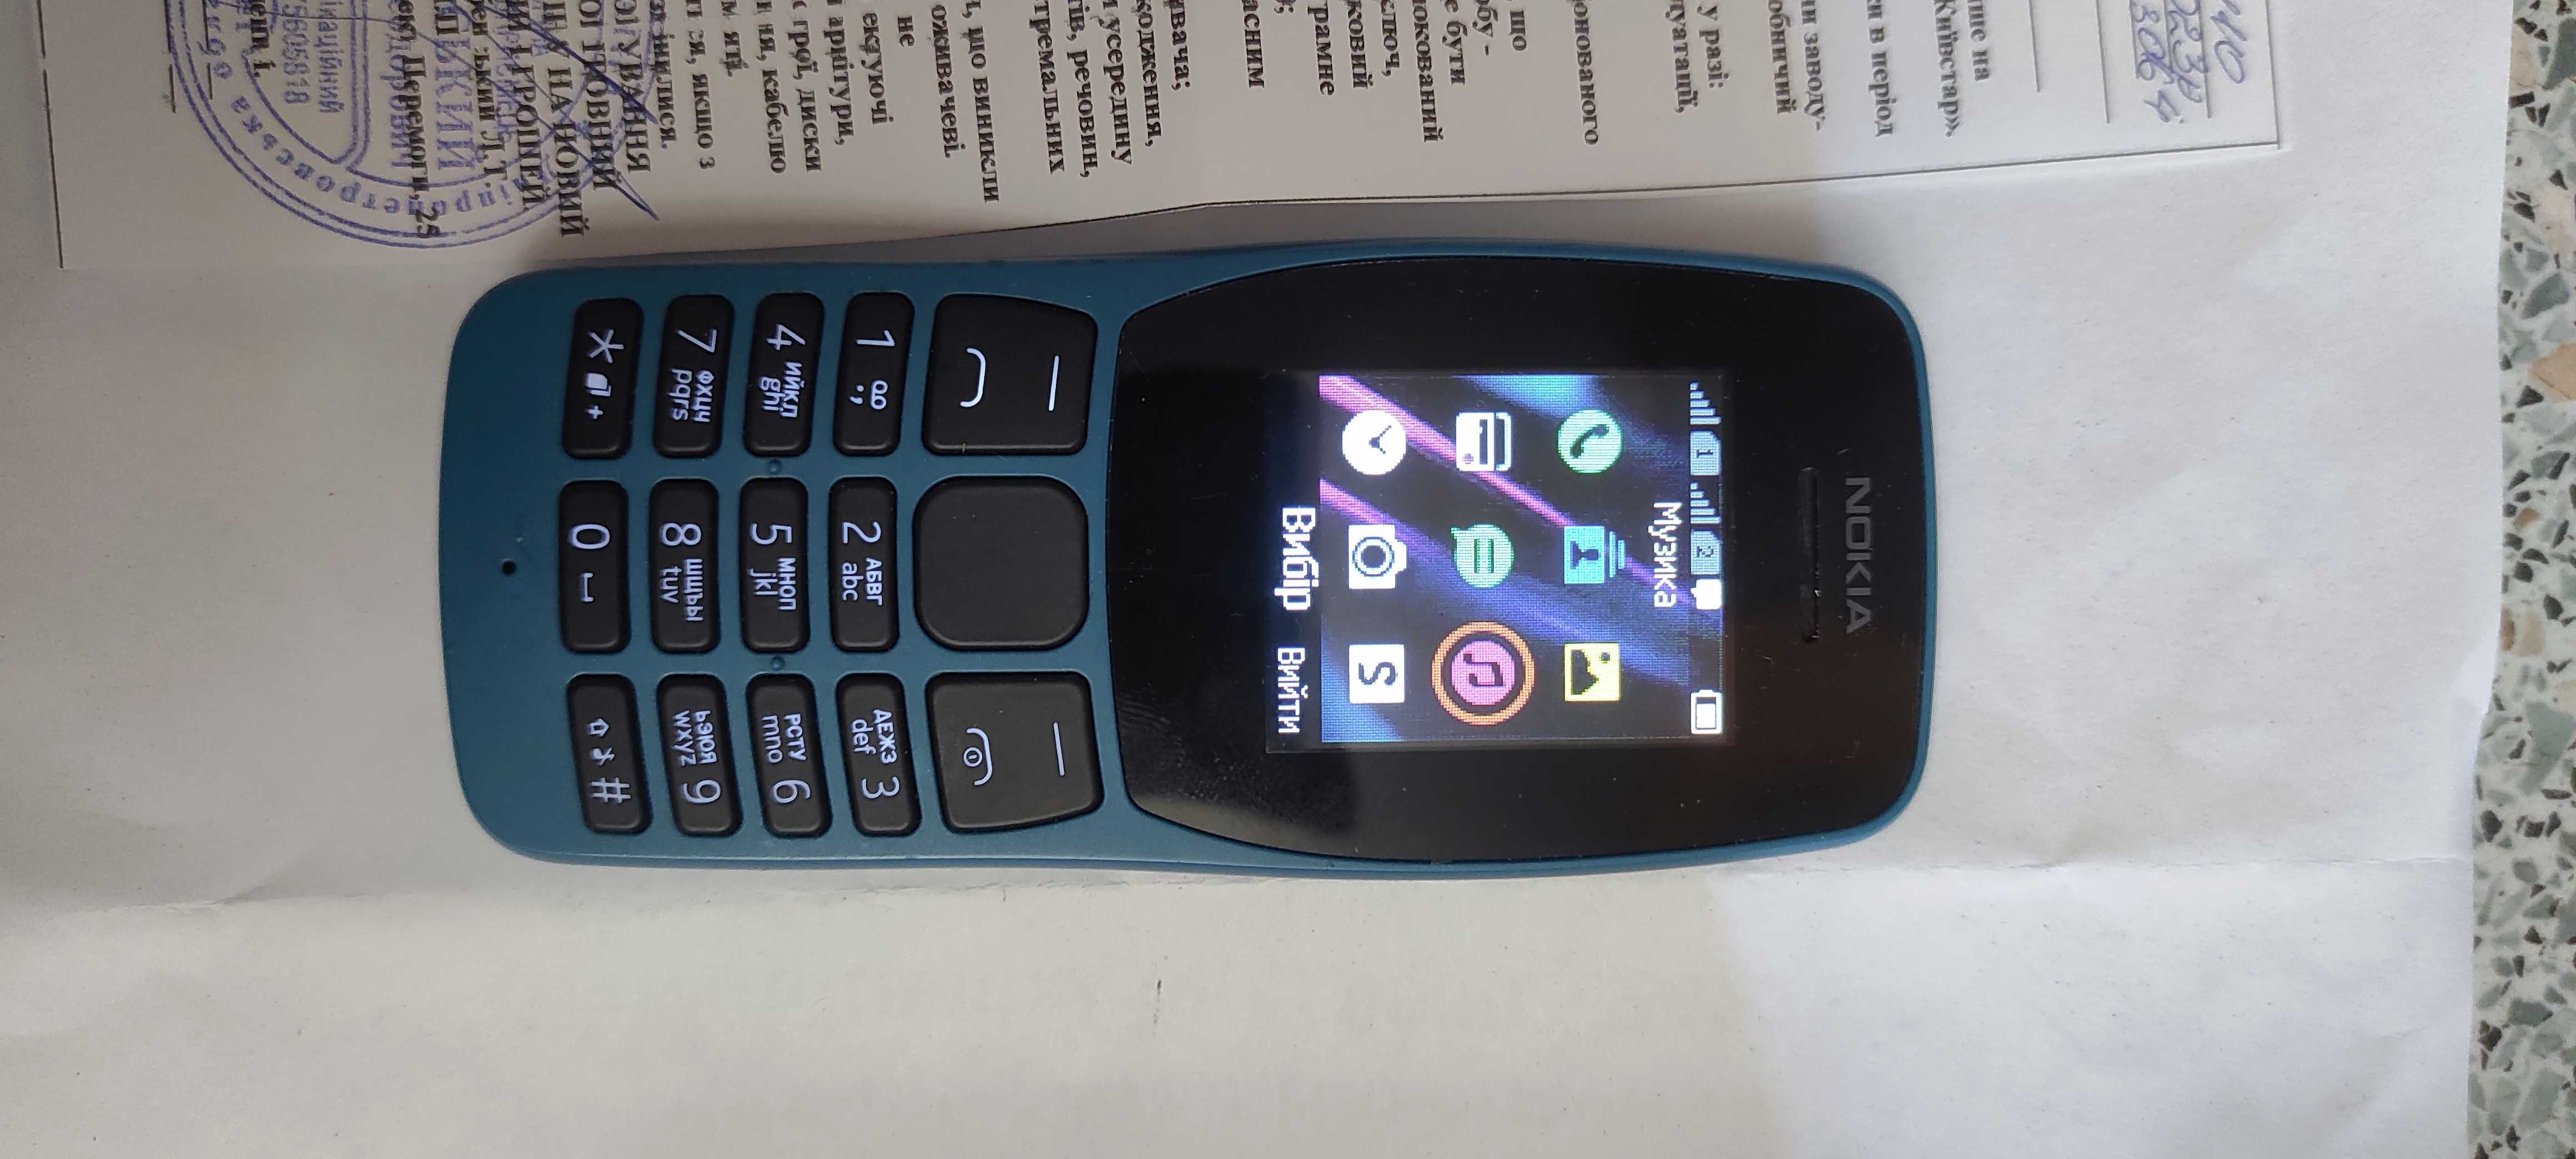 Nokia         110